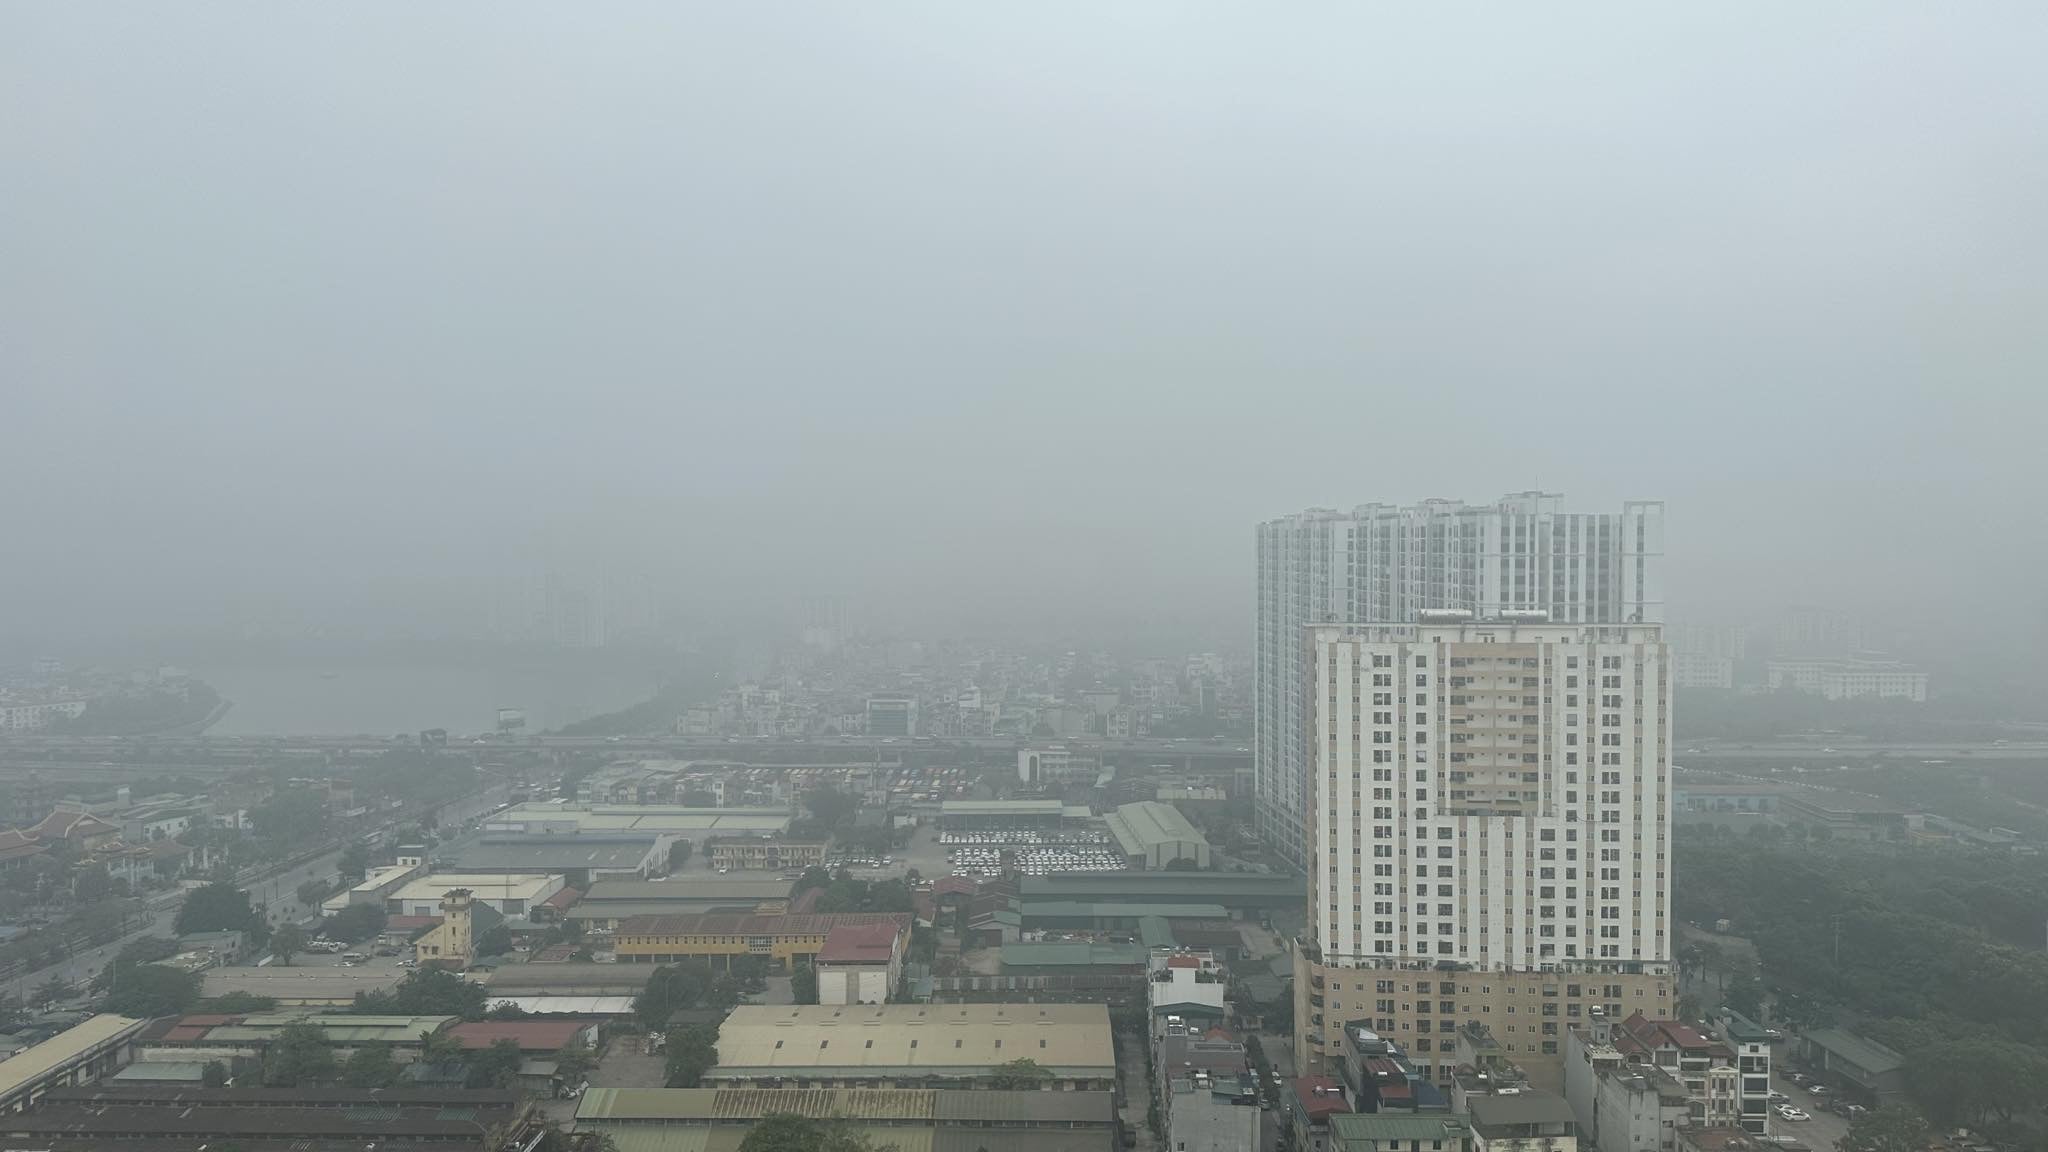 Sáng nay 10.12, Thủ đô Hà Nội bị lớp sương mù dày đặc bao phủ, tầm nhìn hạn chế, các tòa nhà cao tầng đều bị che khuất bởi màu trắng đục.